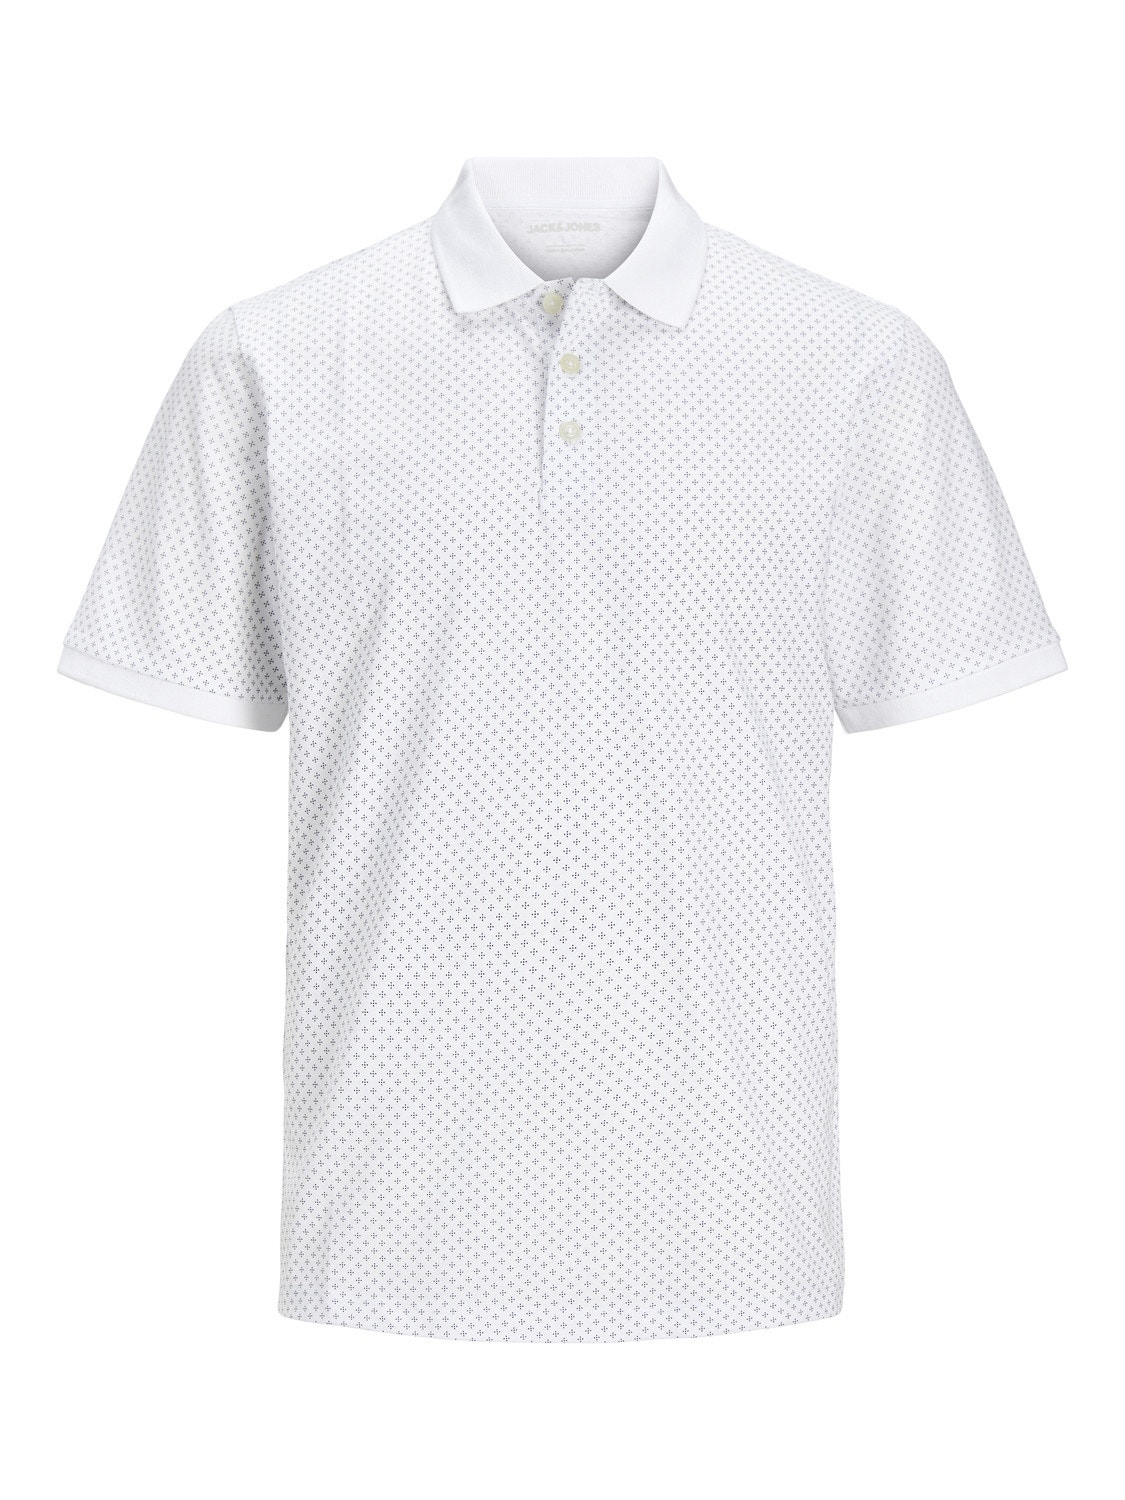 Jack & Jones Plus Size T-shirt Imprimé -White - 12254901